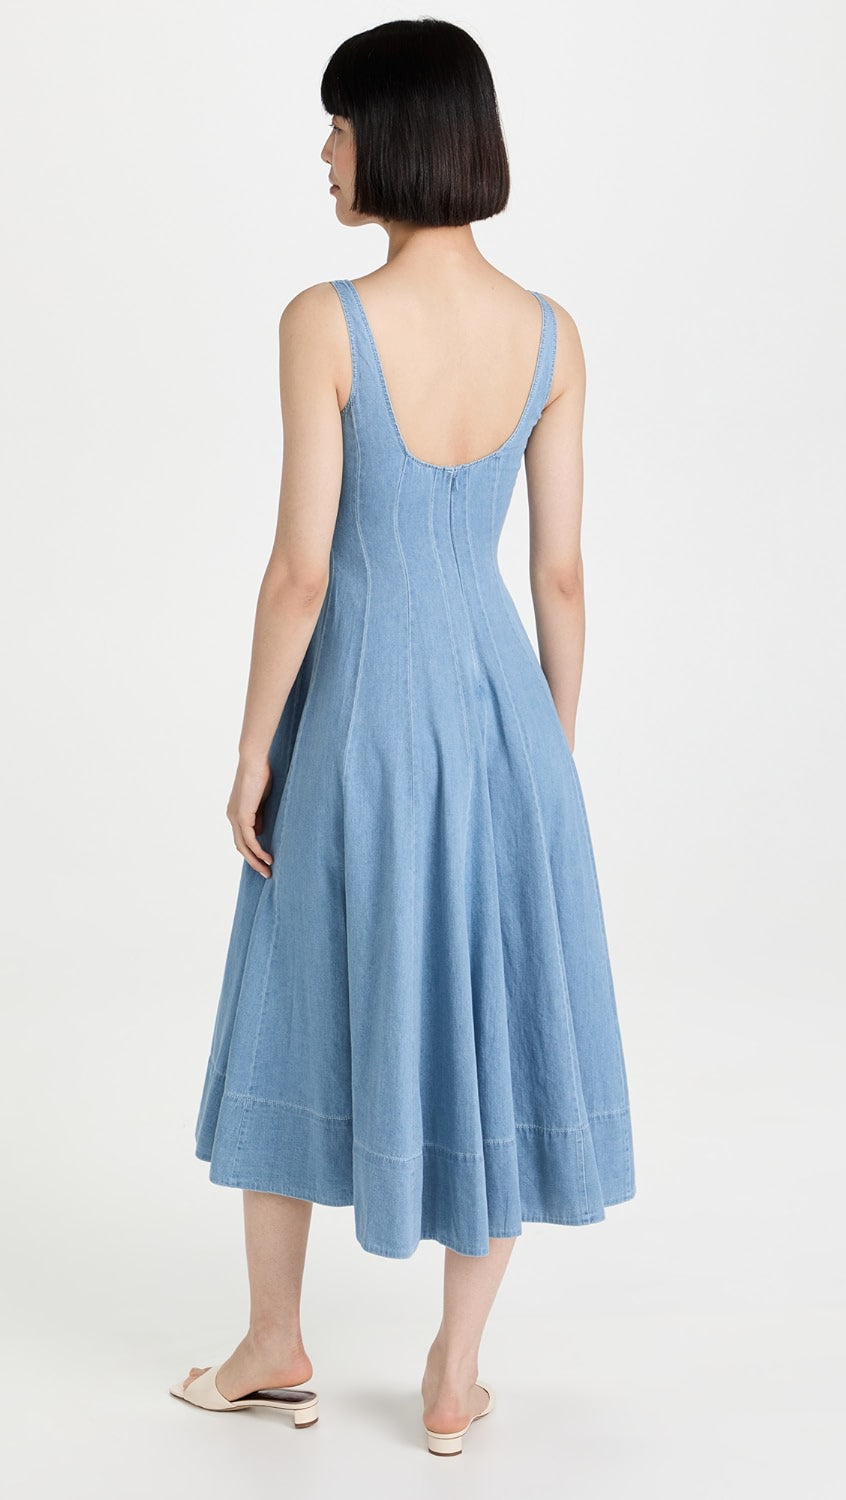 Std Wells Midi Dress - Light Wash Blue Denim